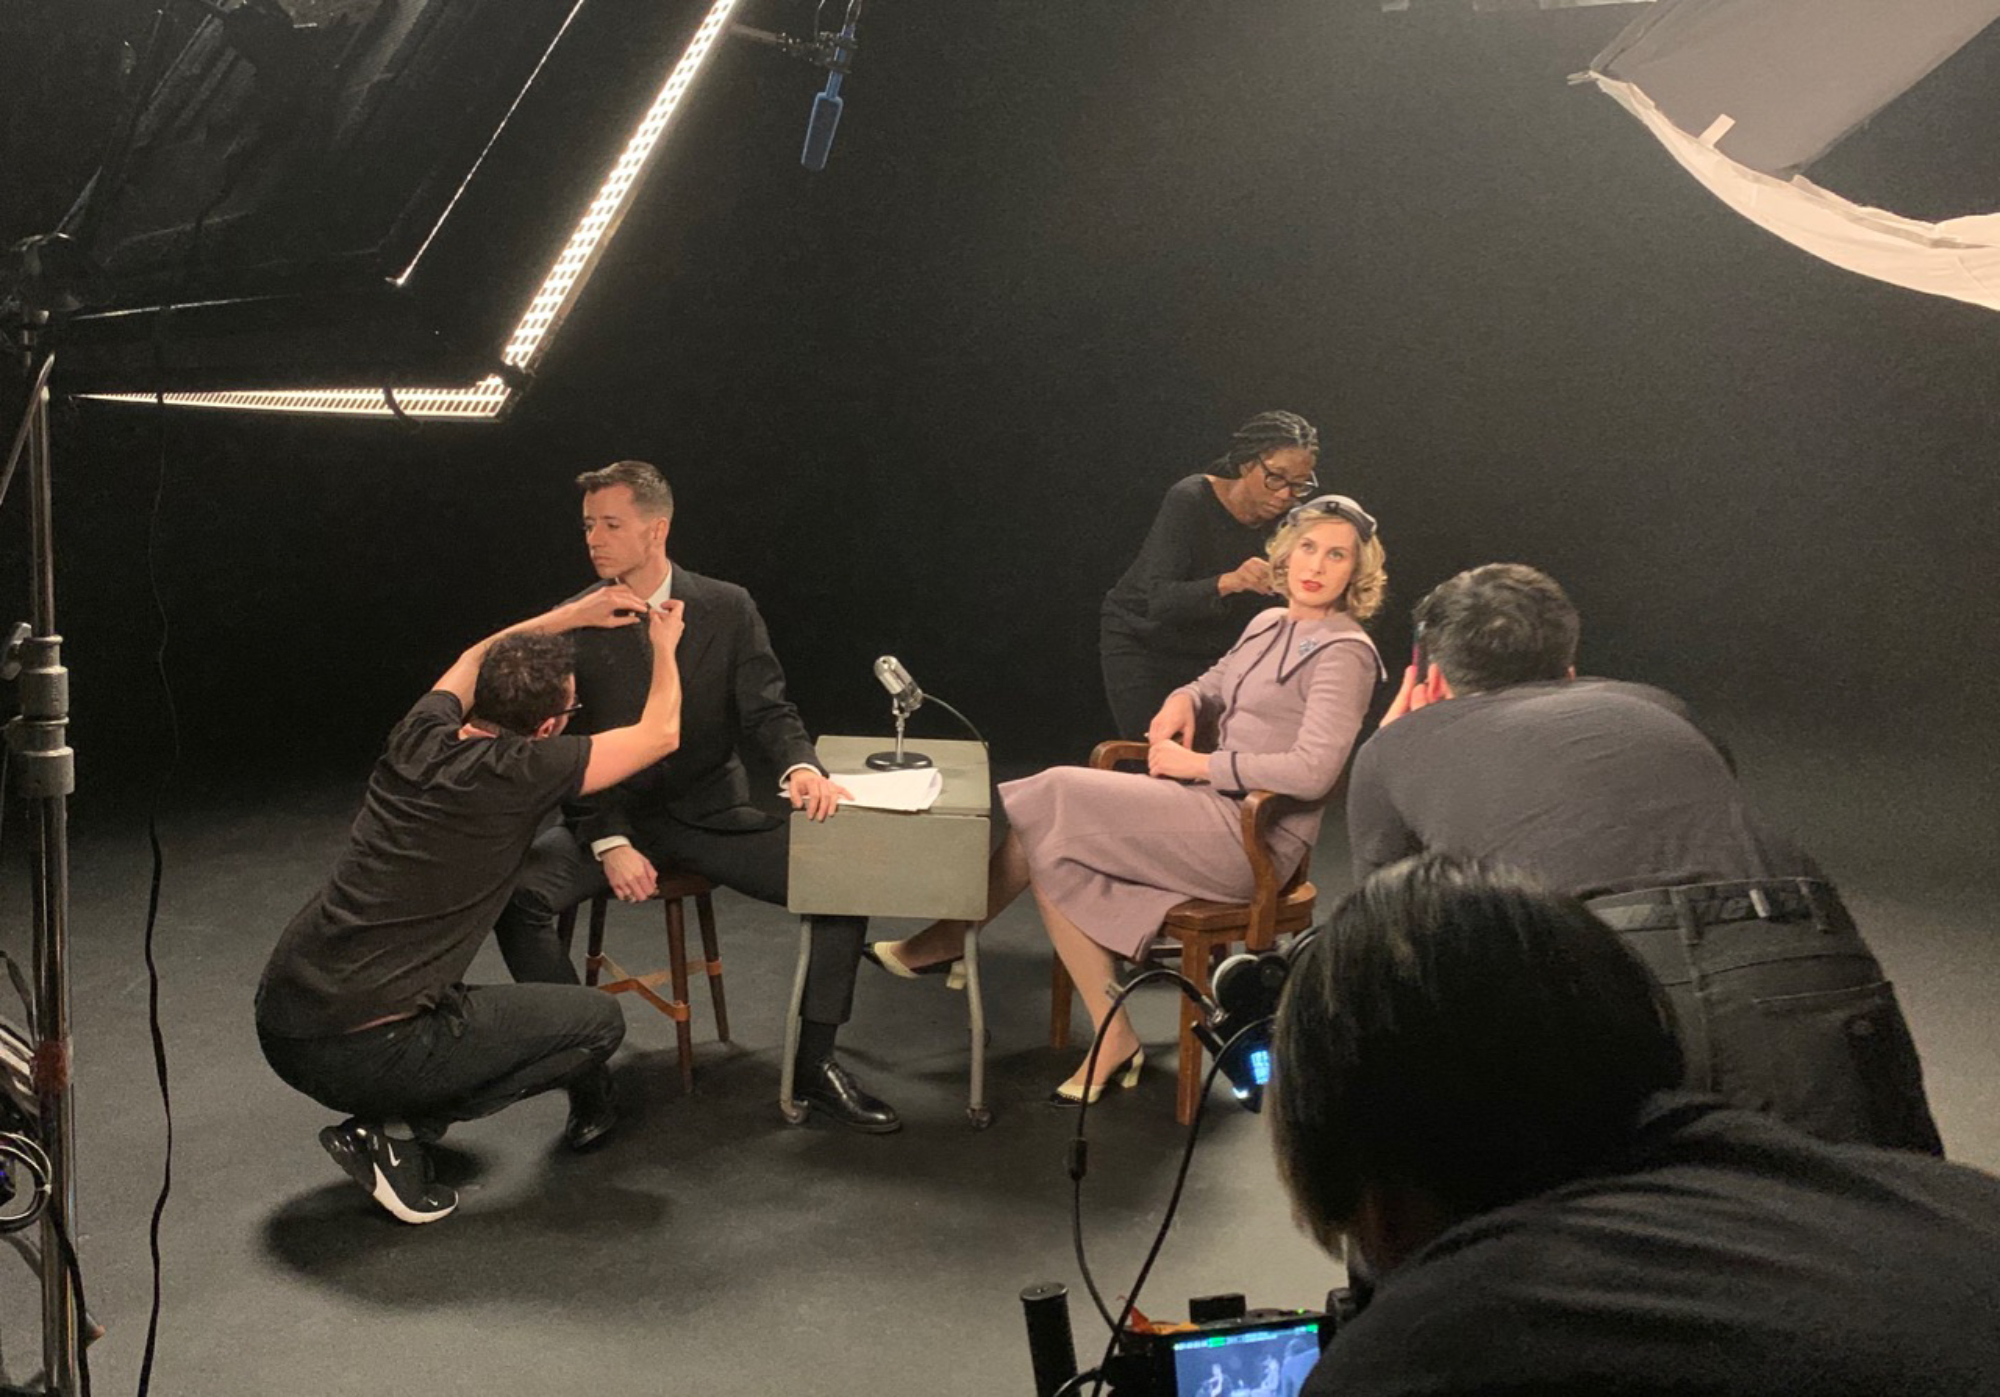 'Framing Agnes' Casey Minatrea (kneeling), Chase Joynt (sitting), Carmen Dianne (standing), Zackary Drucker (sitting) getting ready on set for interview